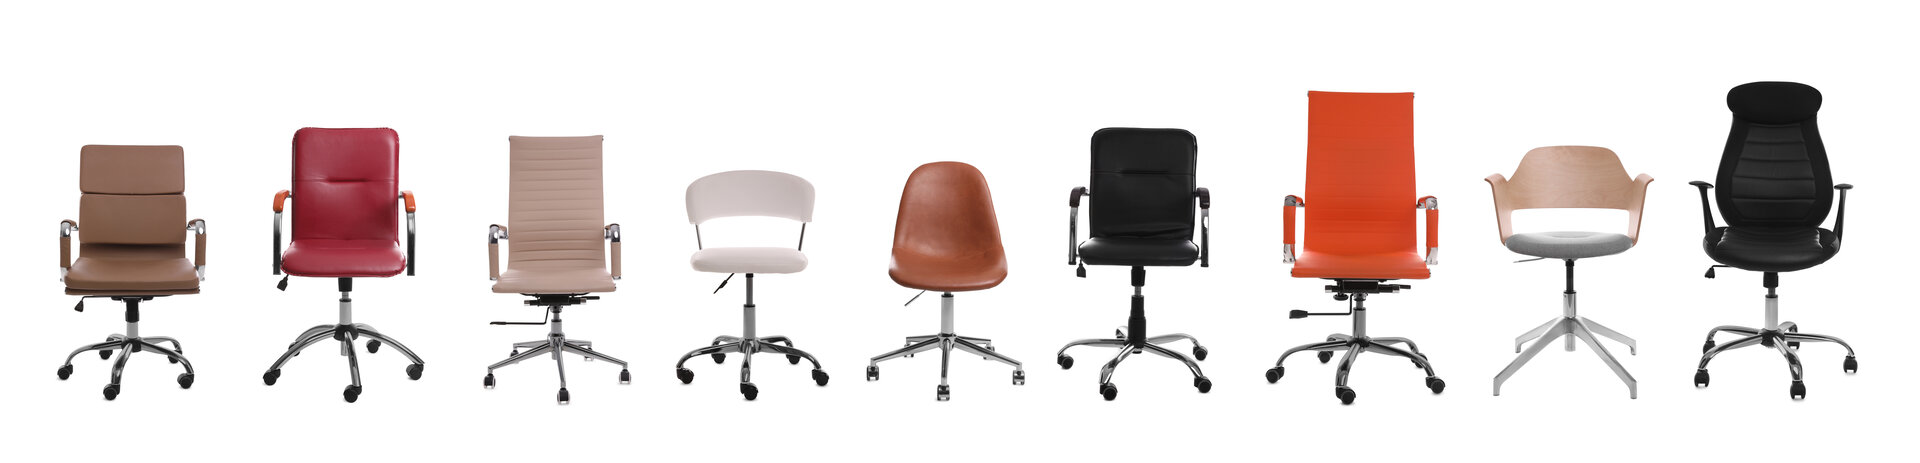 Viele verschiedene Varianten von Bürostühlen